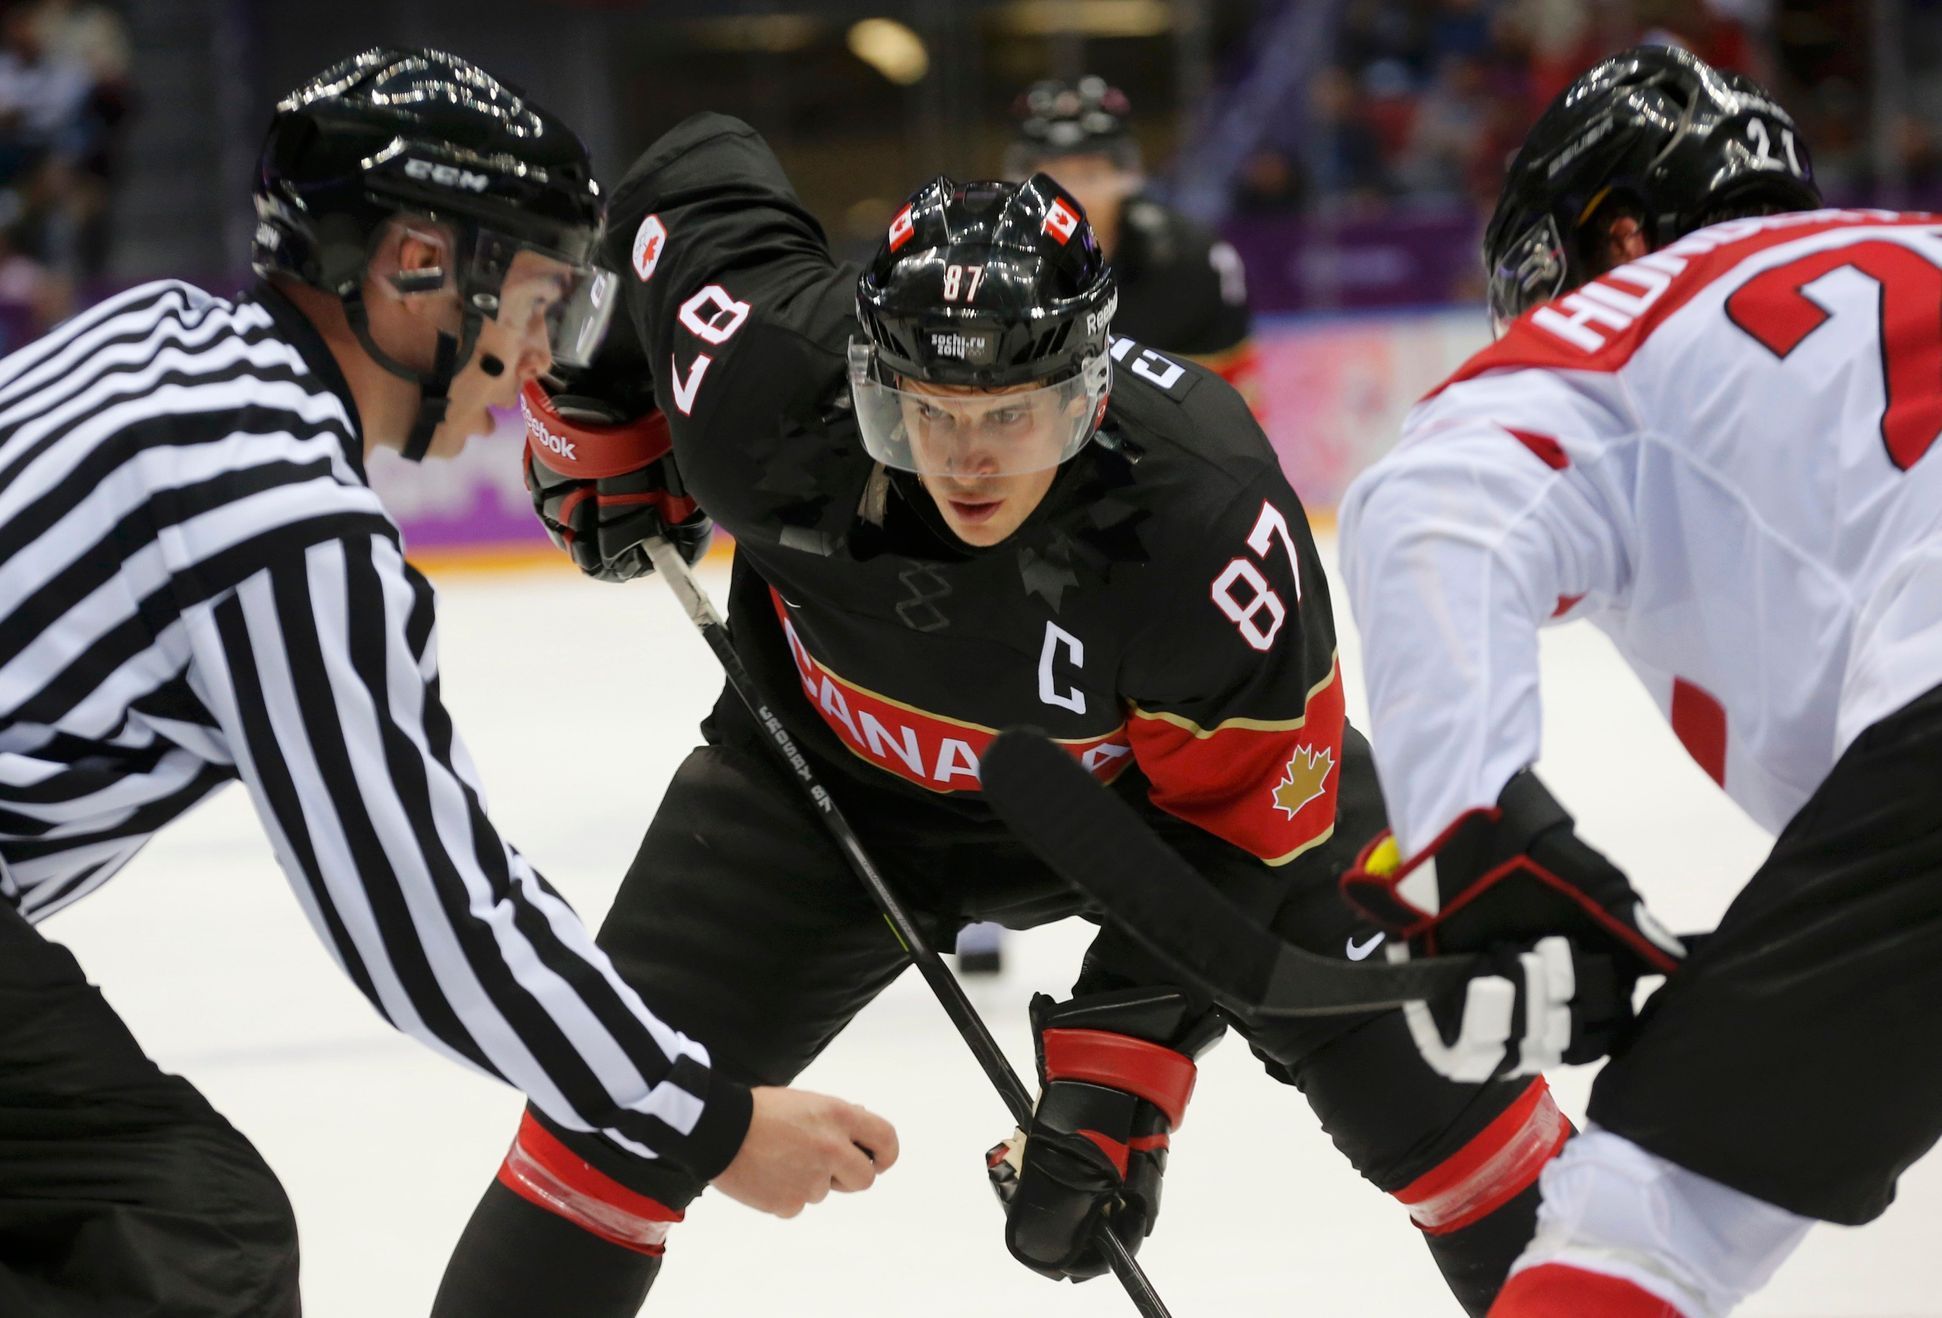 Soči 2014: Kanada (Crosby) - Rakousko (hokej, skupina B)